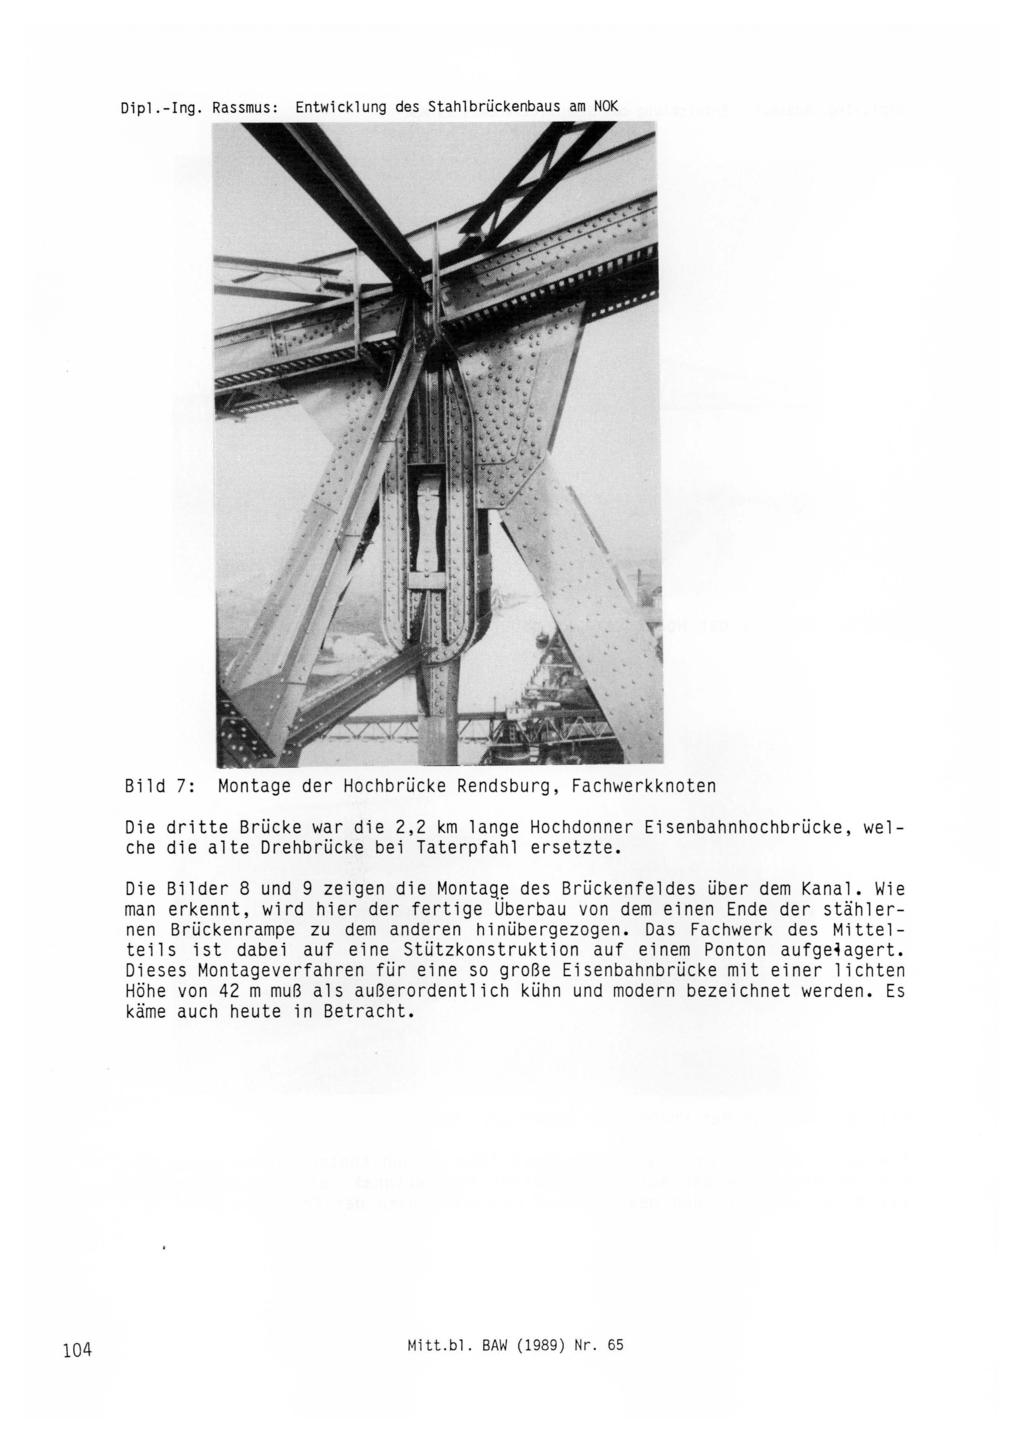 Dipl.-Ing. Rassmus: Bild 7: Montage der Hochbrücke Rendsburg, Fachwerkknoten Die dritte Brücke war die 2,2 km lange Hochdonner Eisenbahnhochbrücke, welche die alte Drehbrücke bei Taterpfahl ersetzte.